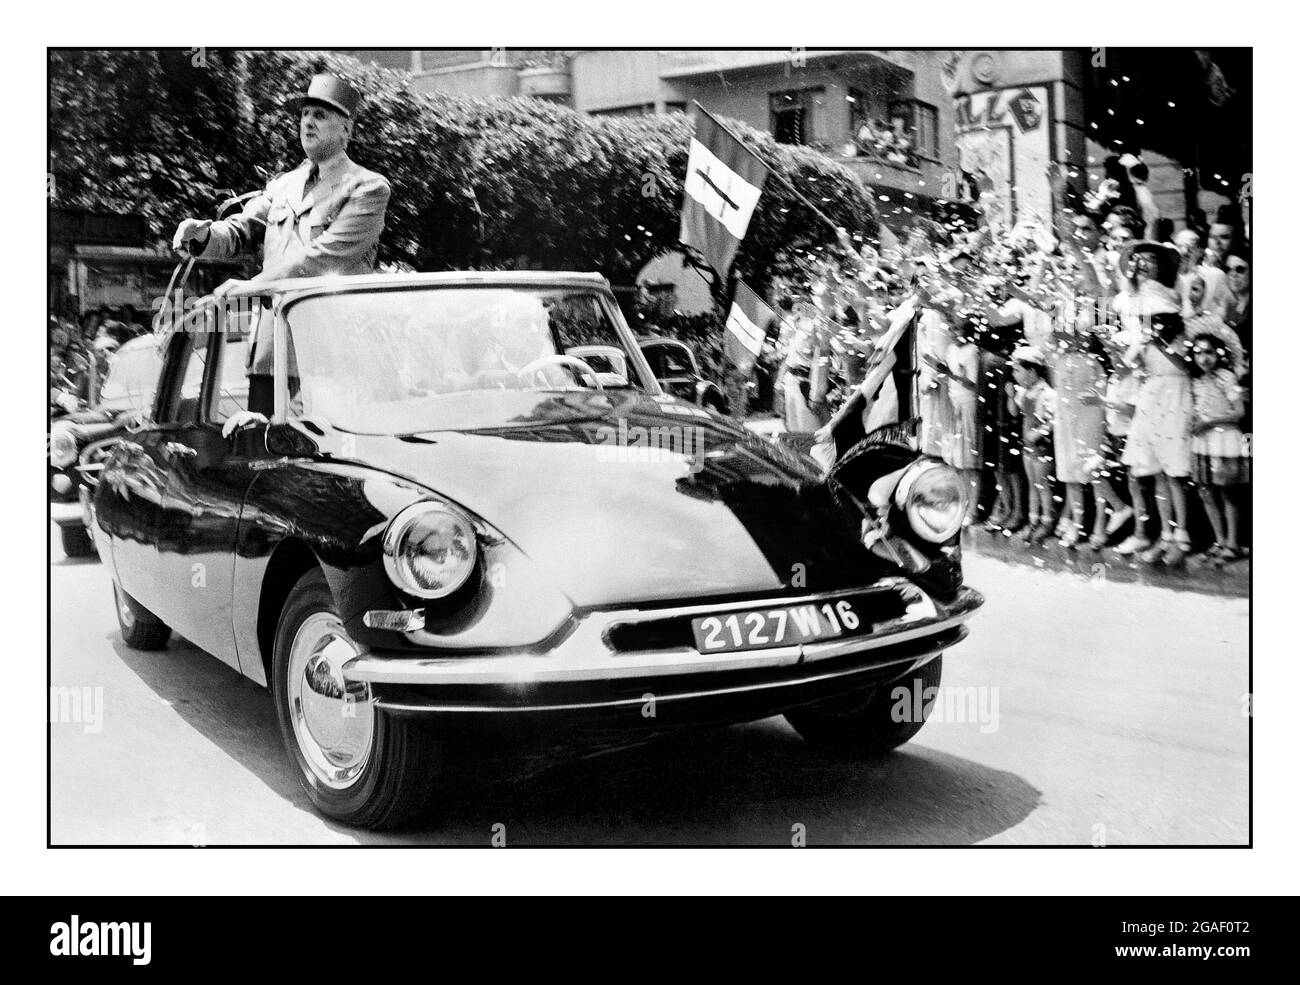 Le Président Charles de Gaulle, héros populaire de la France de l'après-guerre dans une Citroën DS 19. Sur 22 août 1962, le président français Charles de Gaulle survit à l’une des nombreuses tentatives d’assassinat contre lui grâce à la performance de l’automobile présidentielle Citroën : l’aérodynamisme Citroën DS 19 était également connu sous le nom de « la Deesse » (la Déesse). Banque D'Images